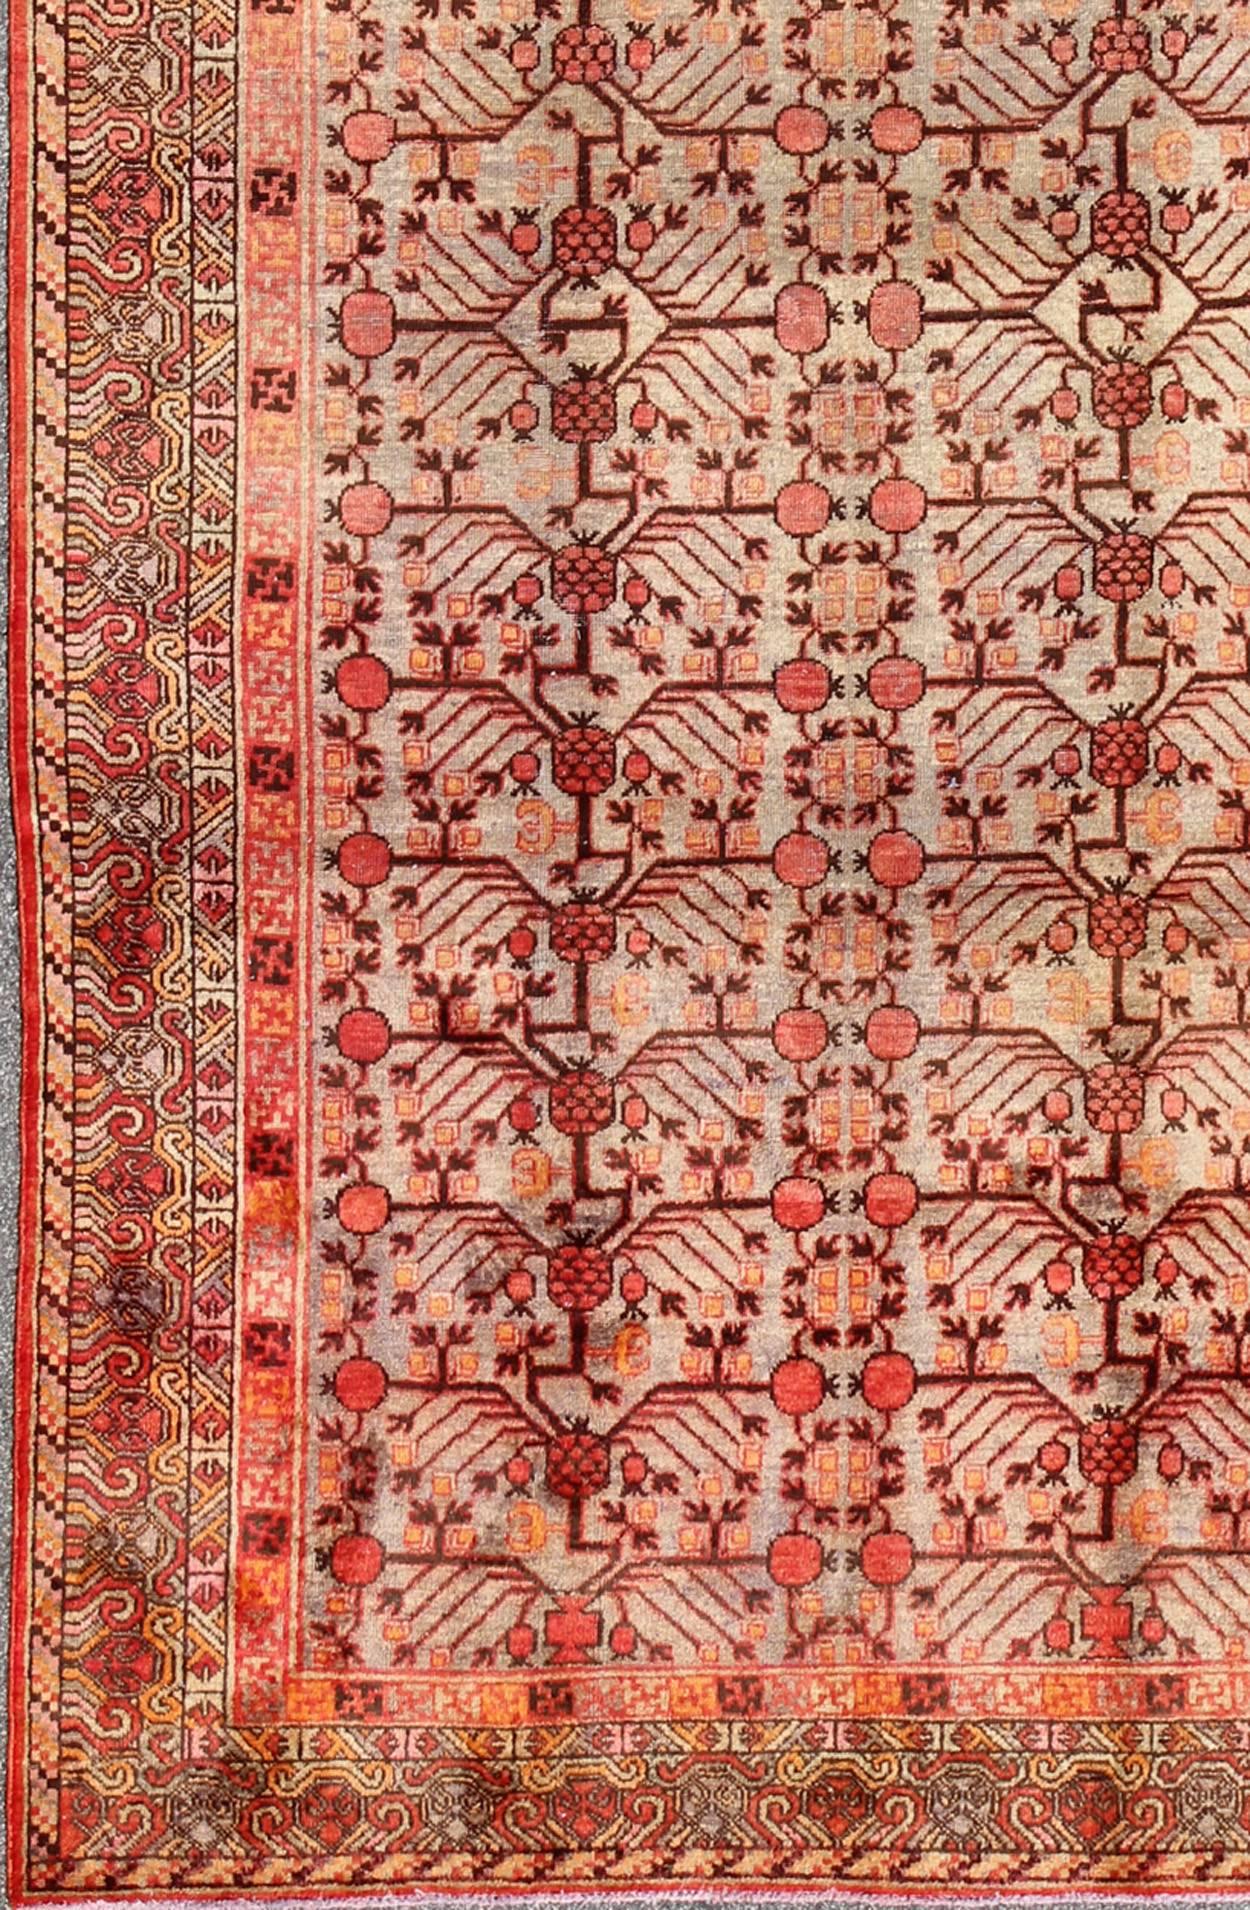 Großer antiker Khotan-Teppich mit Granatapfelmuster in Taupe, Grün, Rot und Braun.
Dieser attraktive antike Khotan-Teppich ist ein spektakuläres Zeugnis für die Komplexität des turkestanischen Designs. Der neutrale Farbton des zentralen Feldes